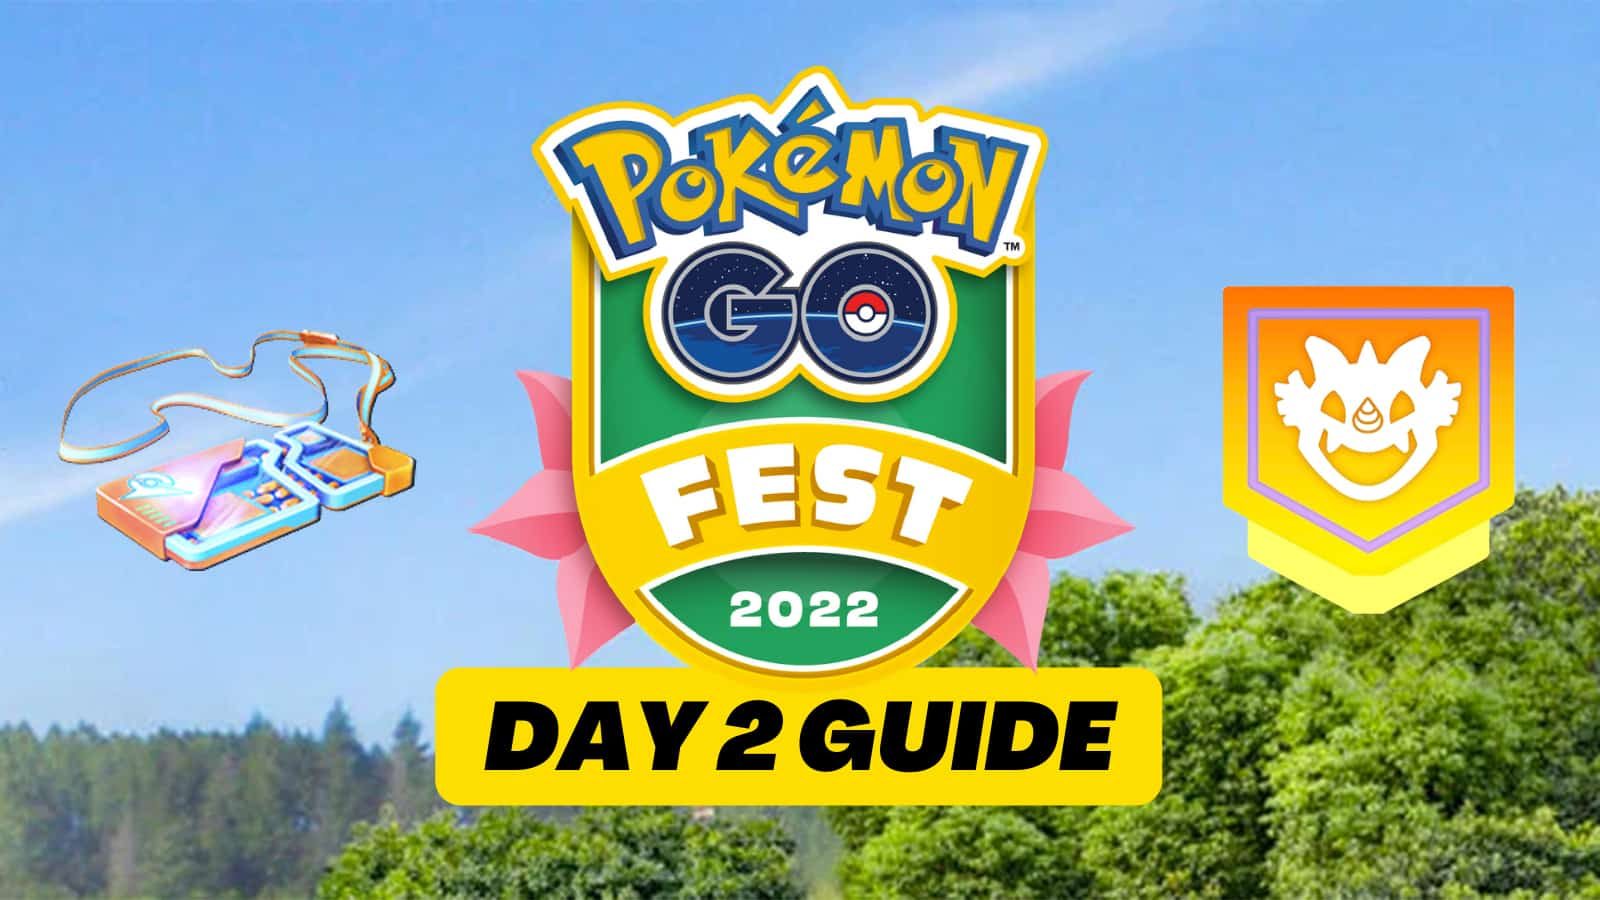 pokemon-go-fest-2022-day-2-guide-6786093